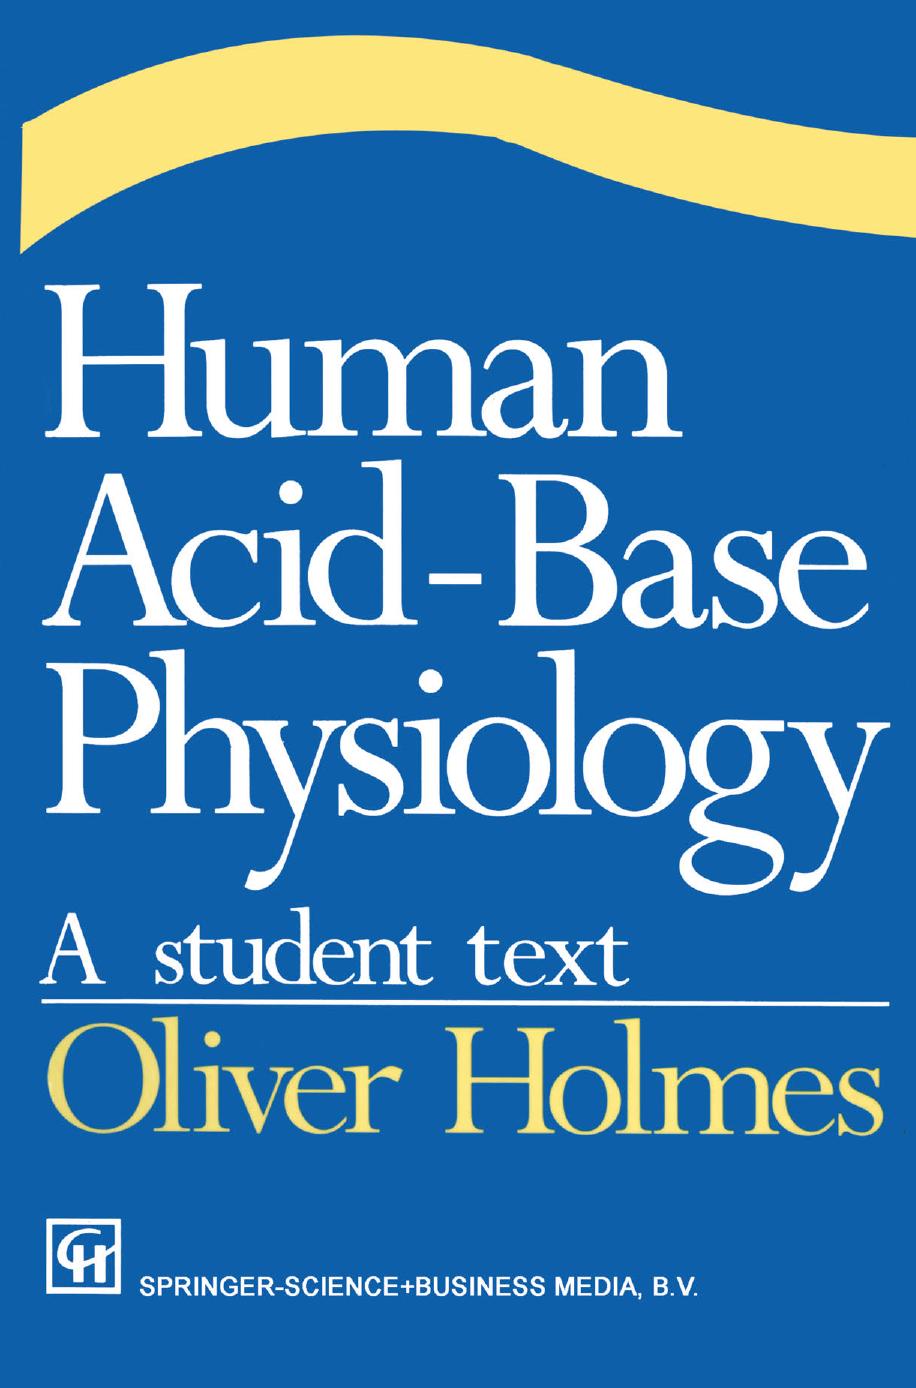 Human Acid-Base Physiology  A student text 1993